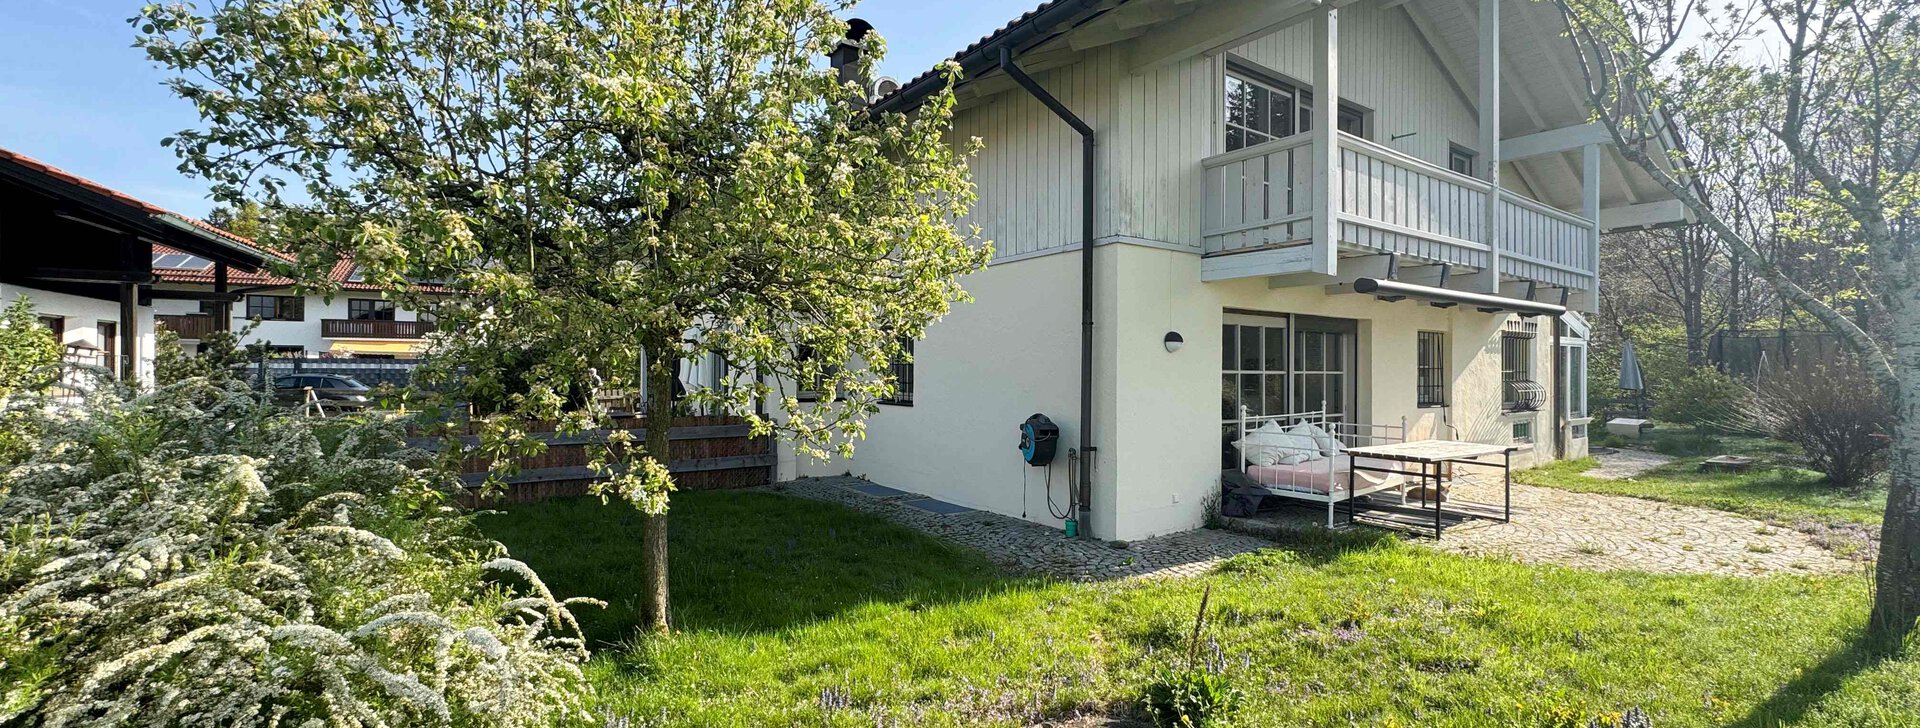 Außenansicht mit Garten, Einfamilienhaus mit Einliegerwohnung, Immobilie kaufen, Traunstein | © HausBauHaus GmbH 